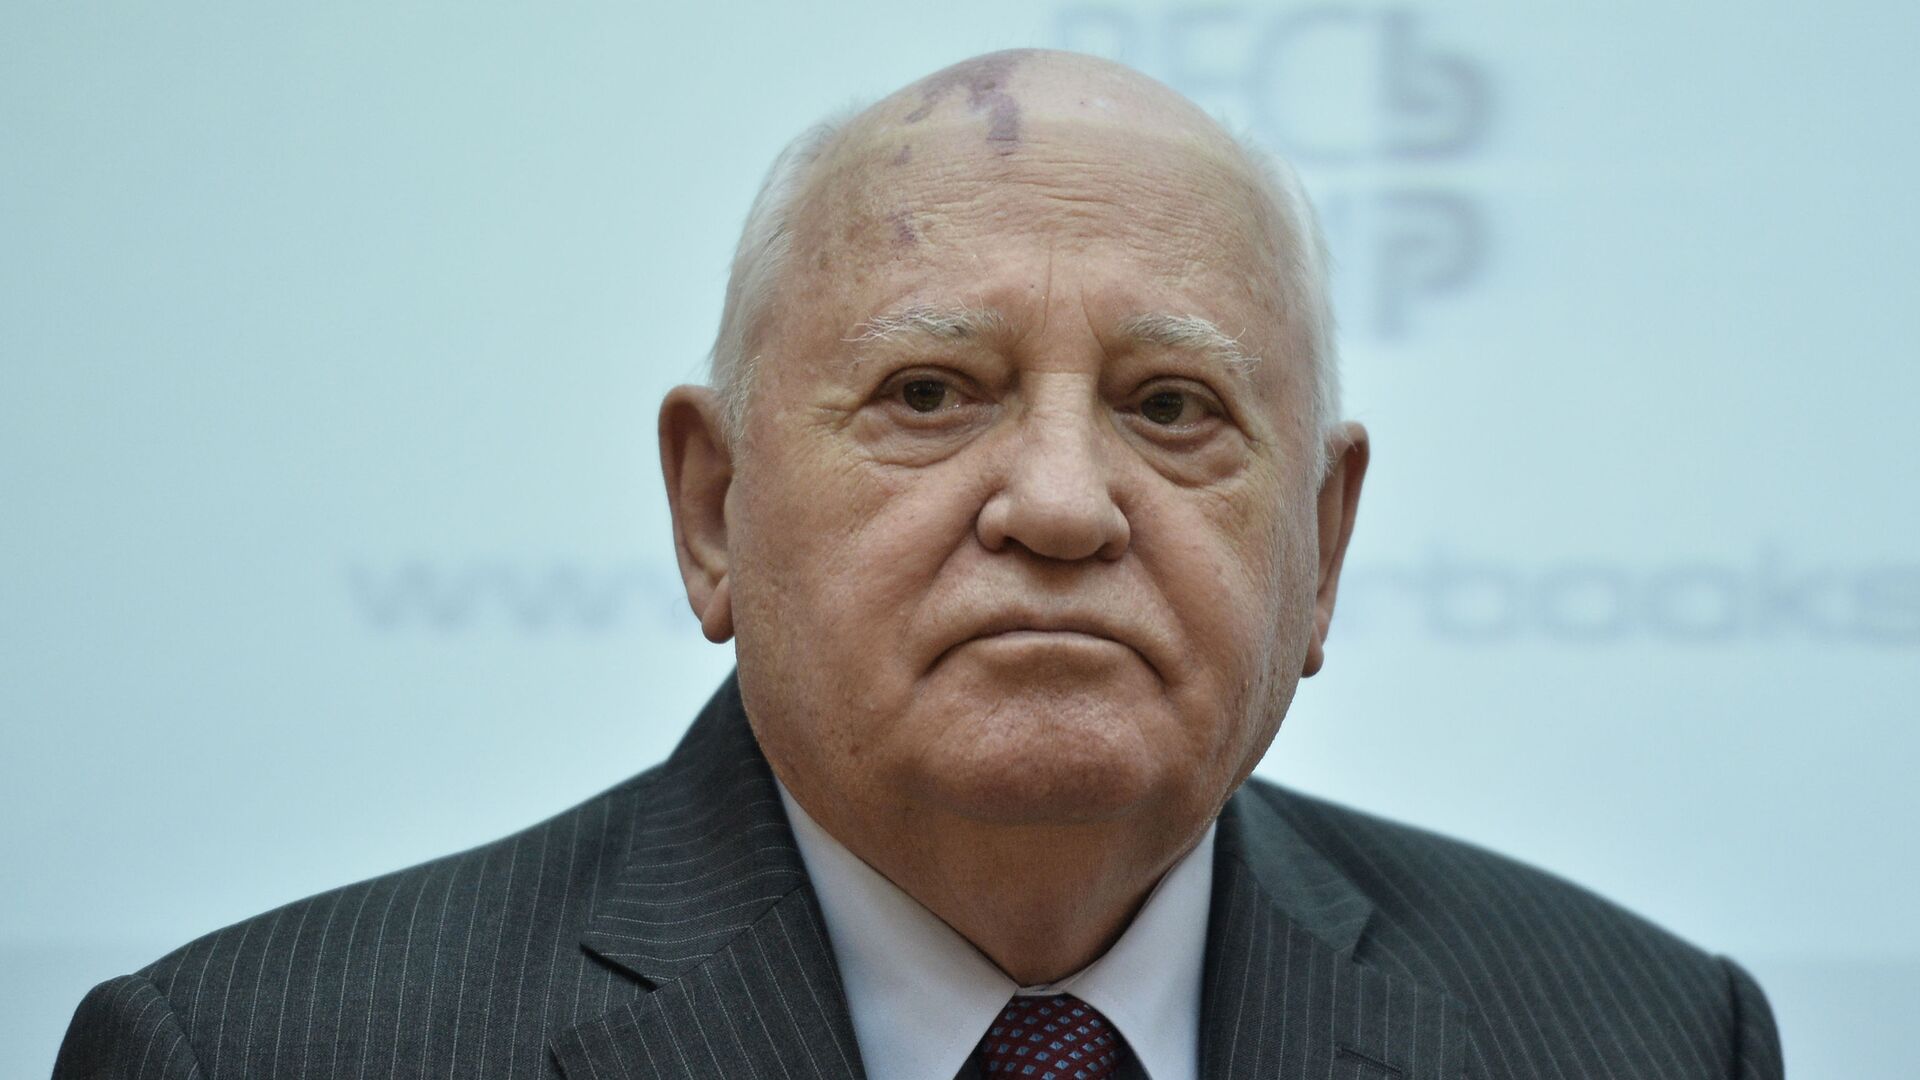 Buvęs TSRS prezidentas Michailas Gorbačiovas - Sputnik Lietuva, 1920, 02.03.2021